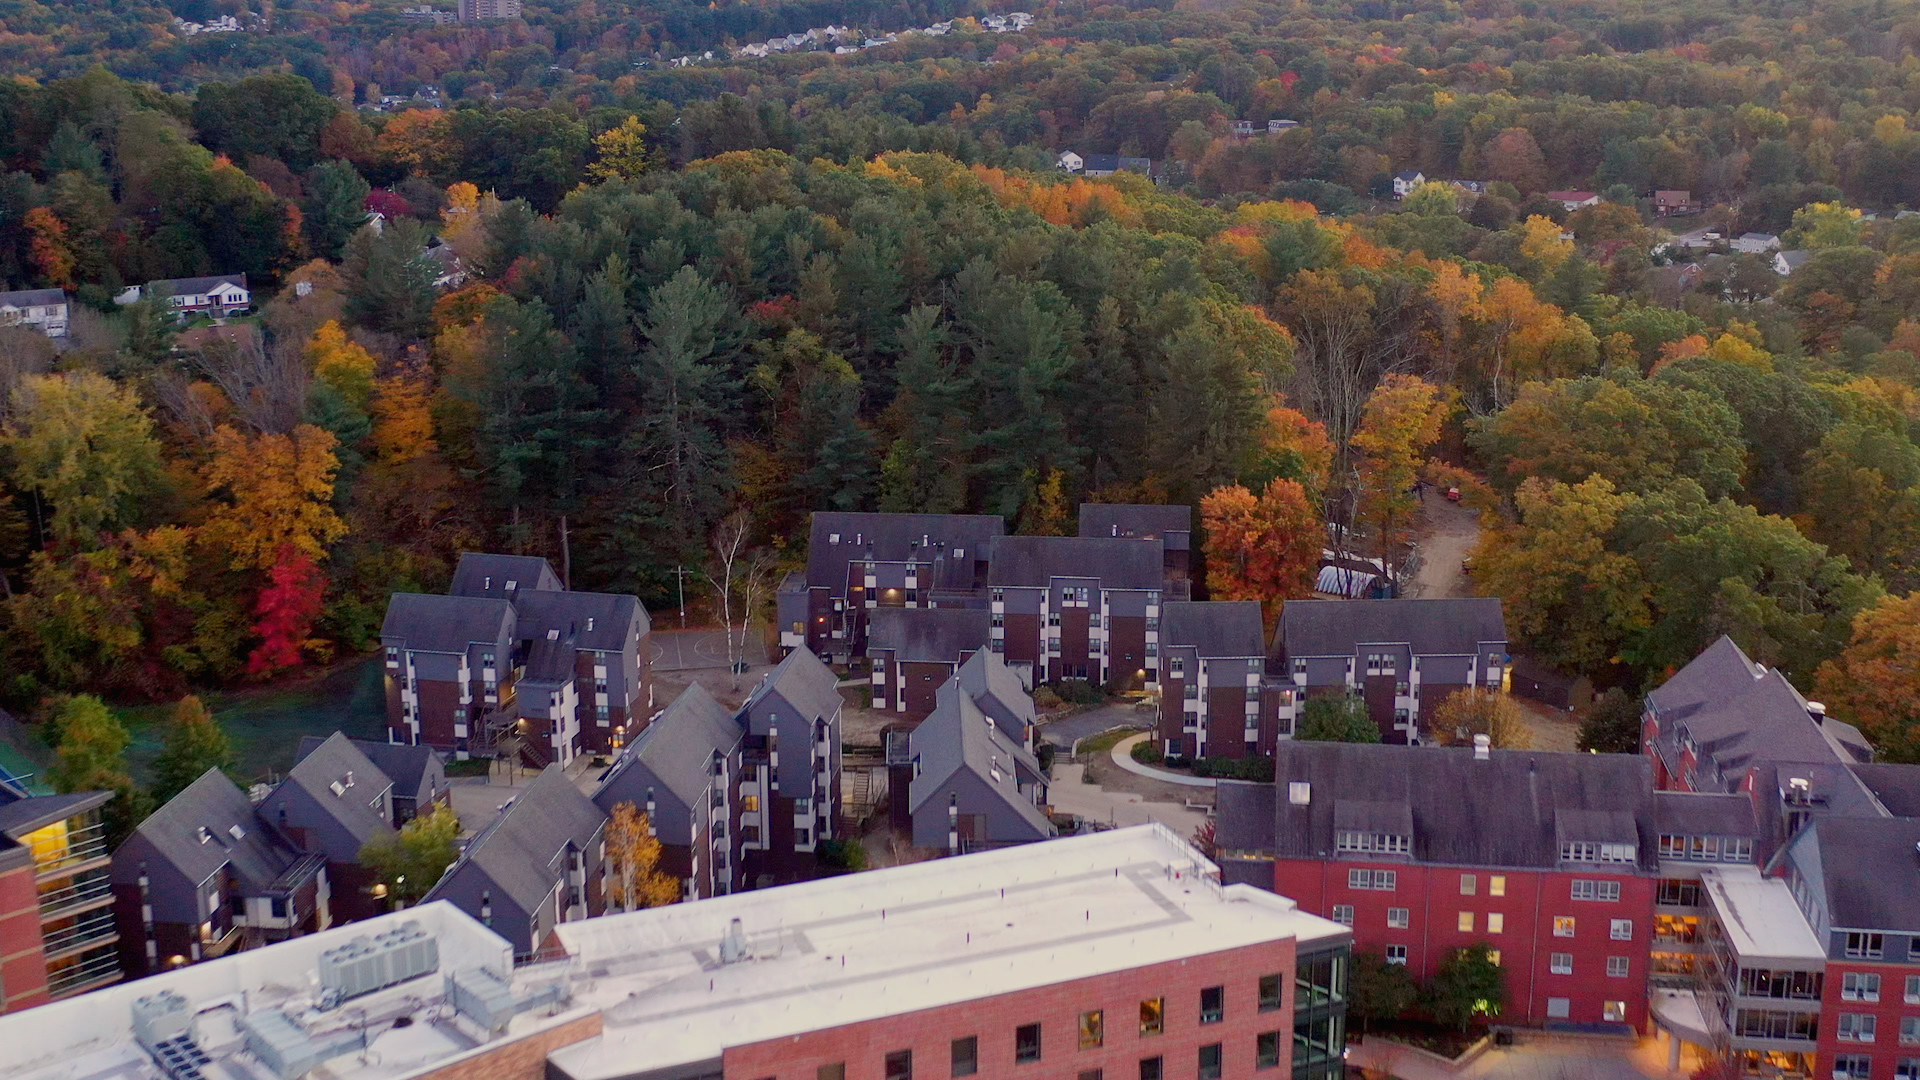 Chandler Village on Worcester State's campus